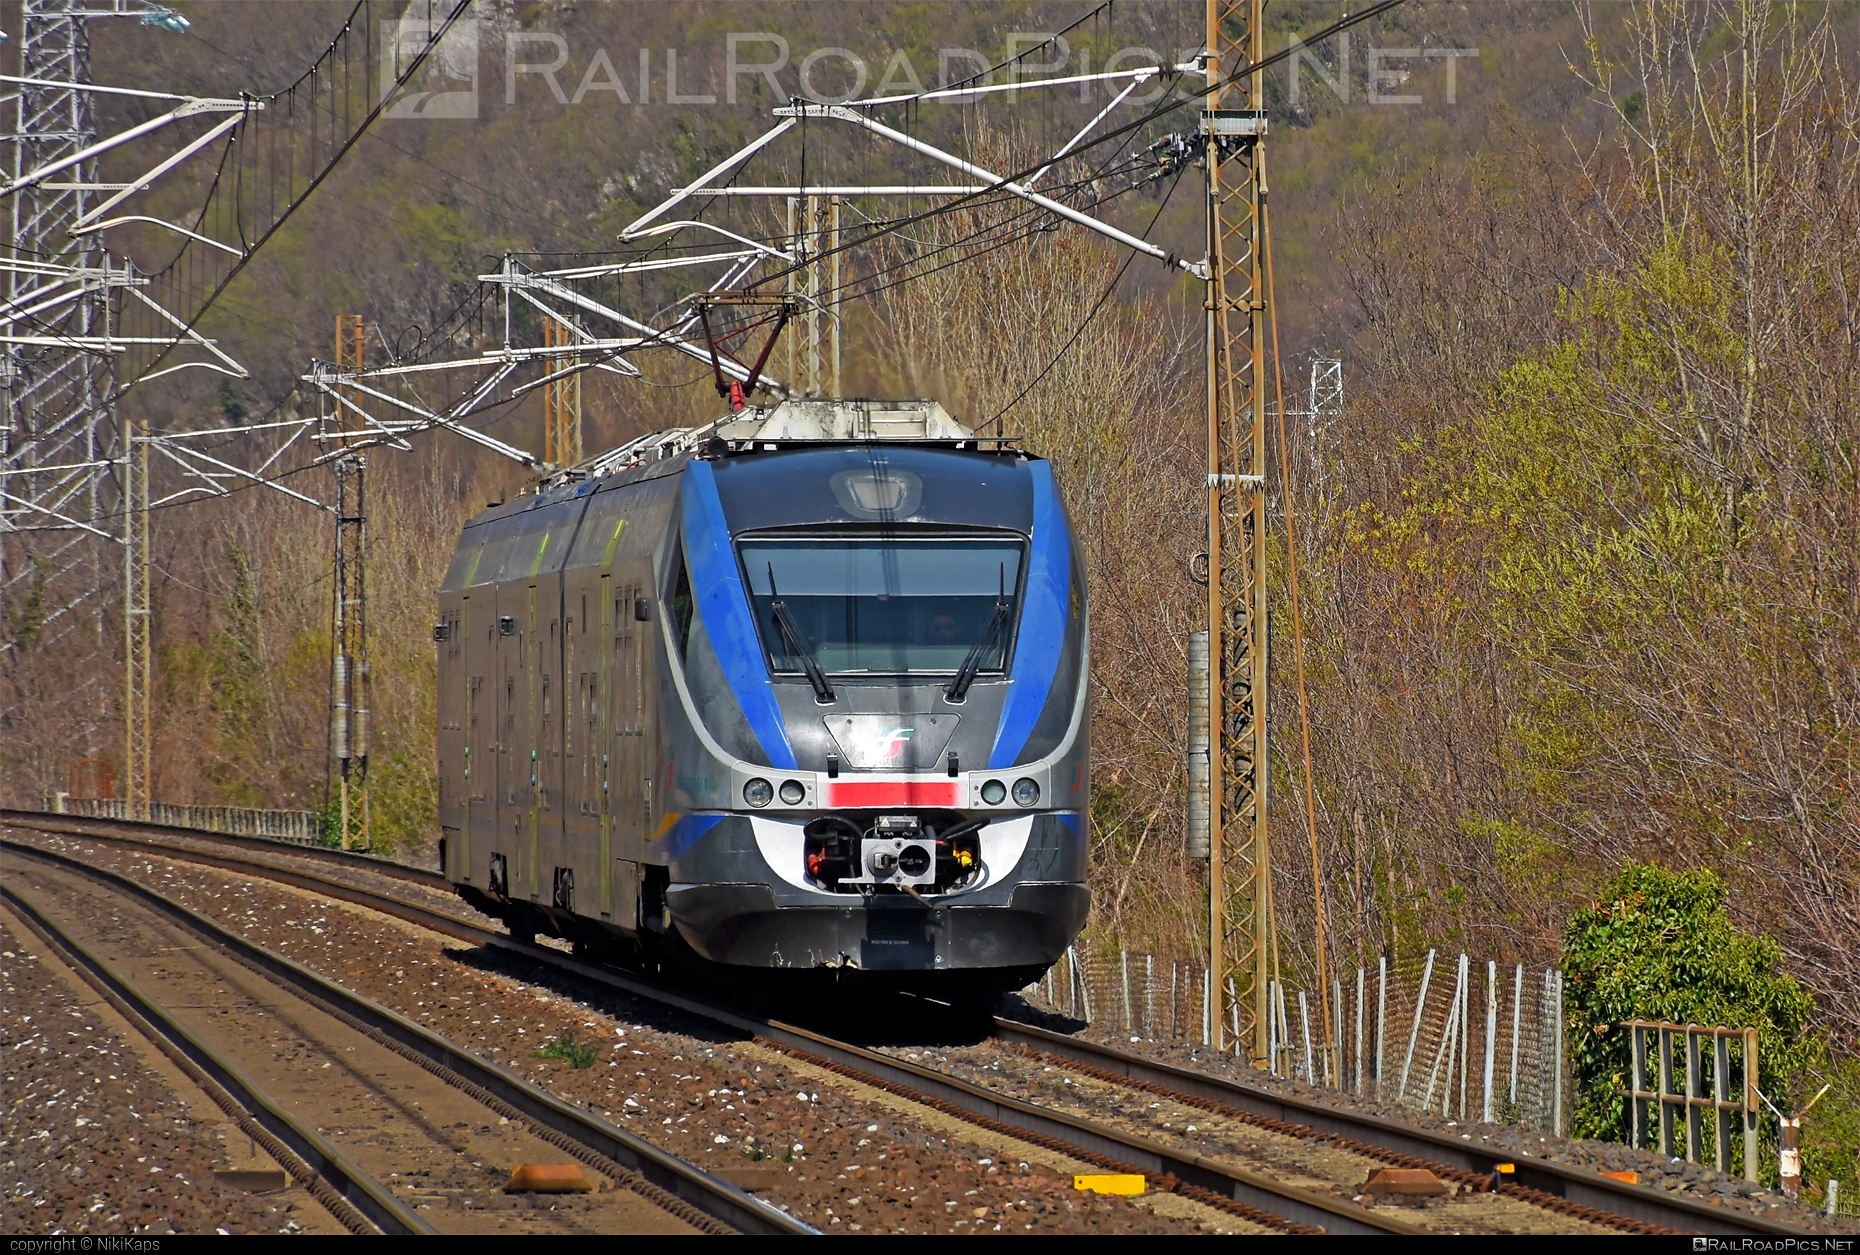 Alstom Minuetto - ME 091 operated by Trenitalia S.p.A. #alstom #alstomminuetto #ferroviedellostato #fs #fsitaliane #minuetto #trenitalia #trenitaliaspa